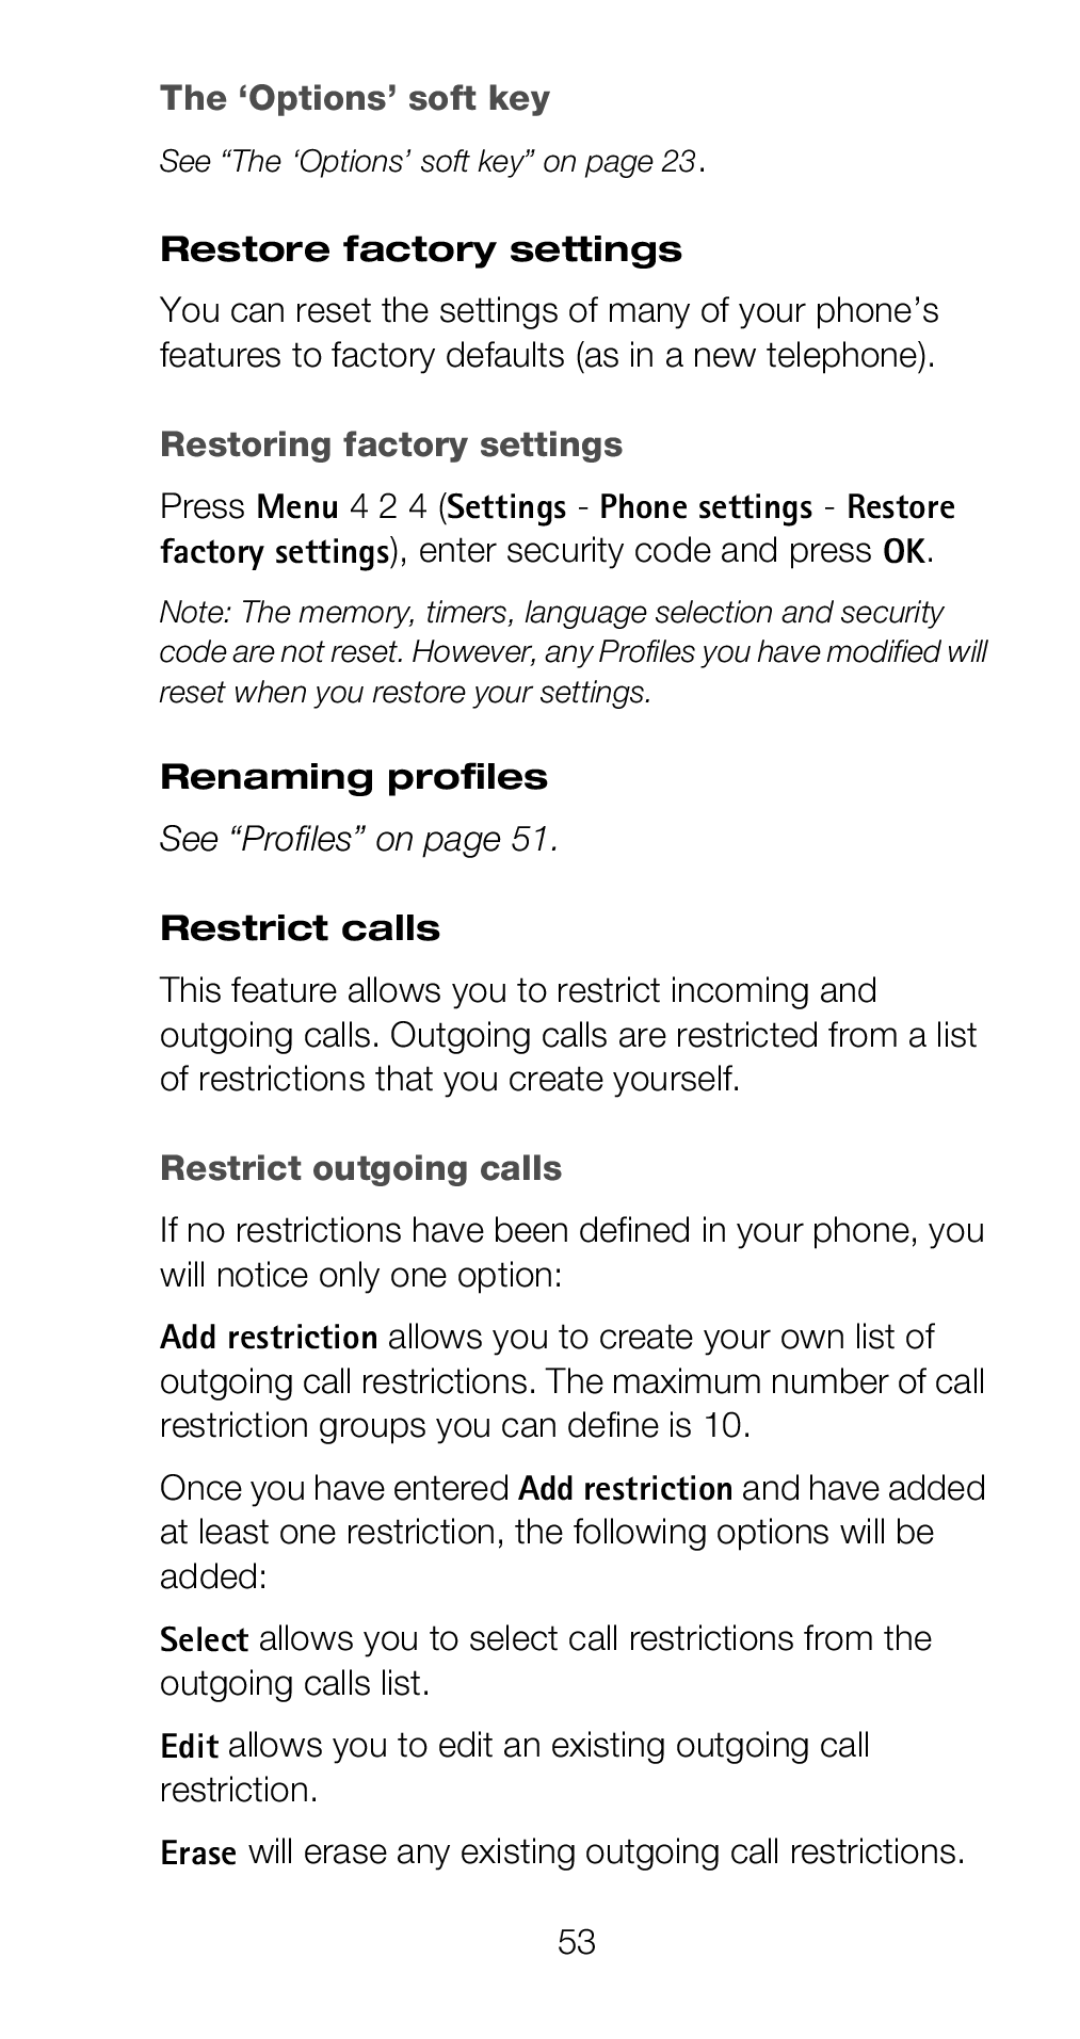 Nokia 6160 manual Restore factory settings, Restoring factory settings, Renaming profiles, Restrict calls 